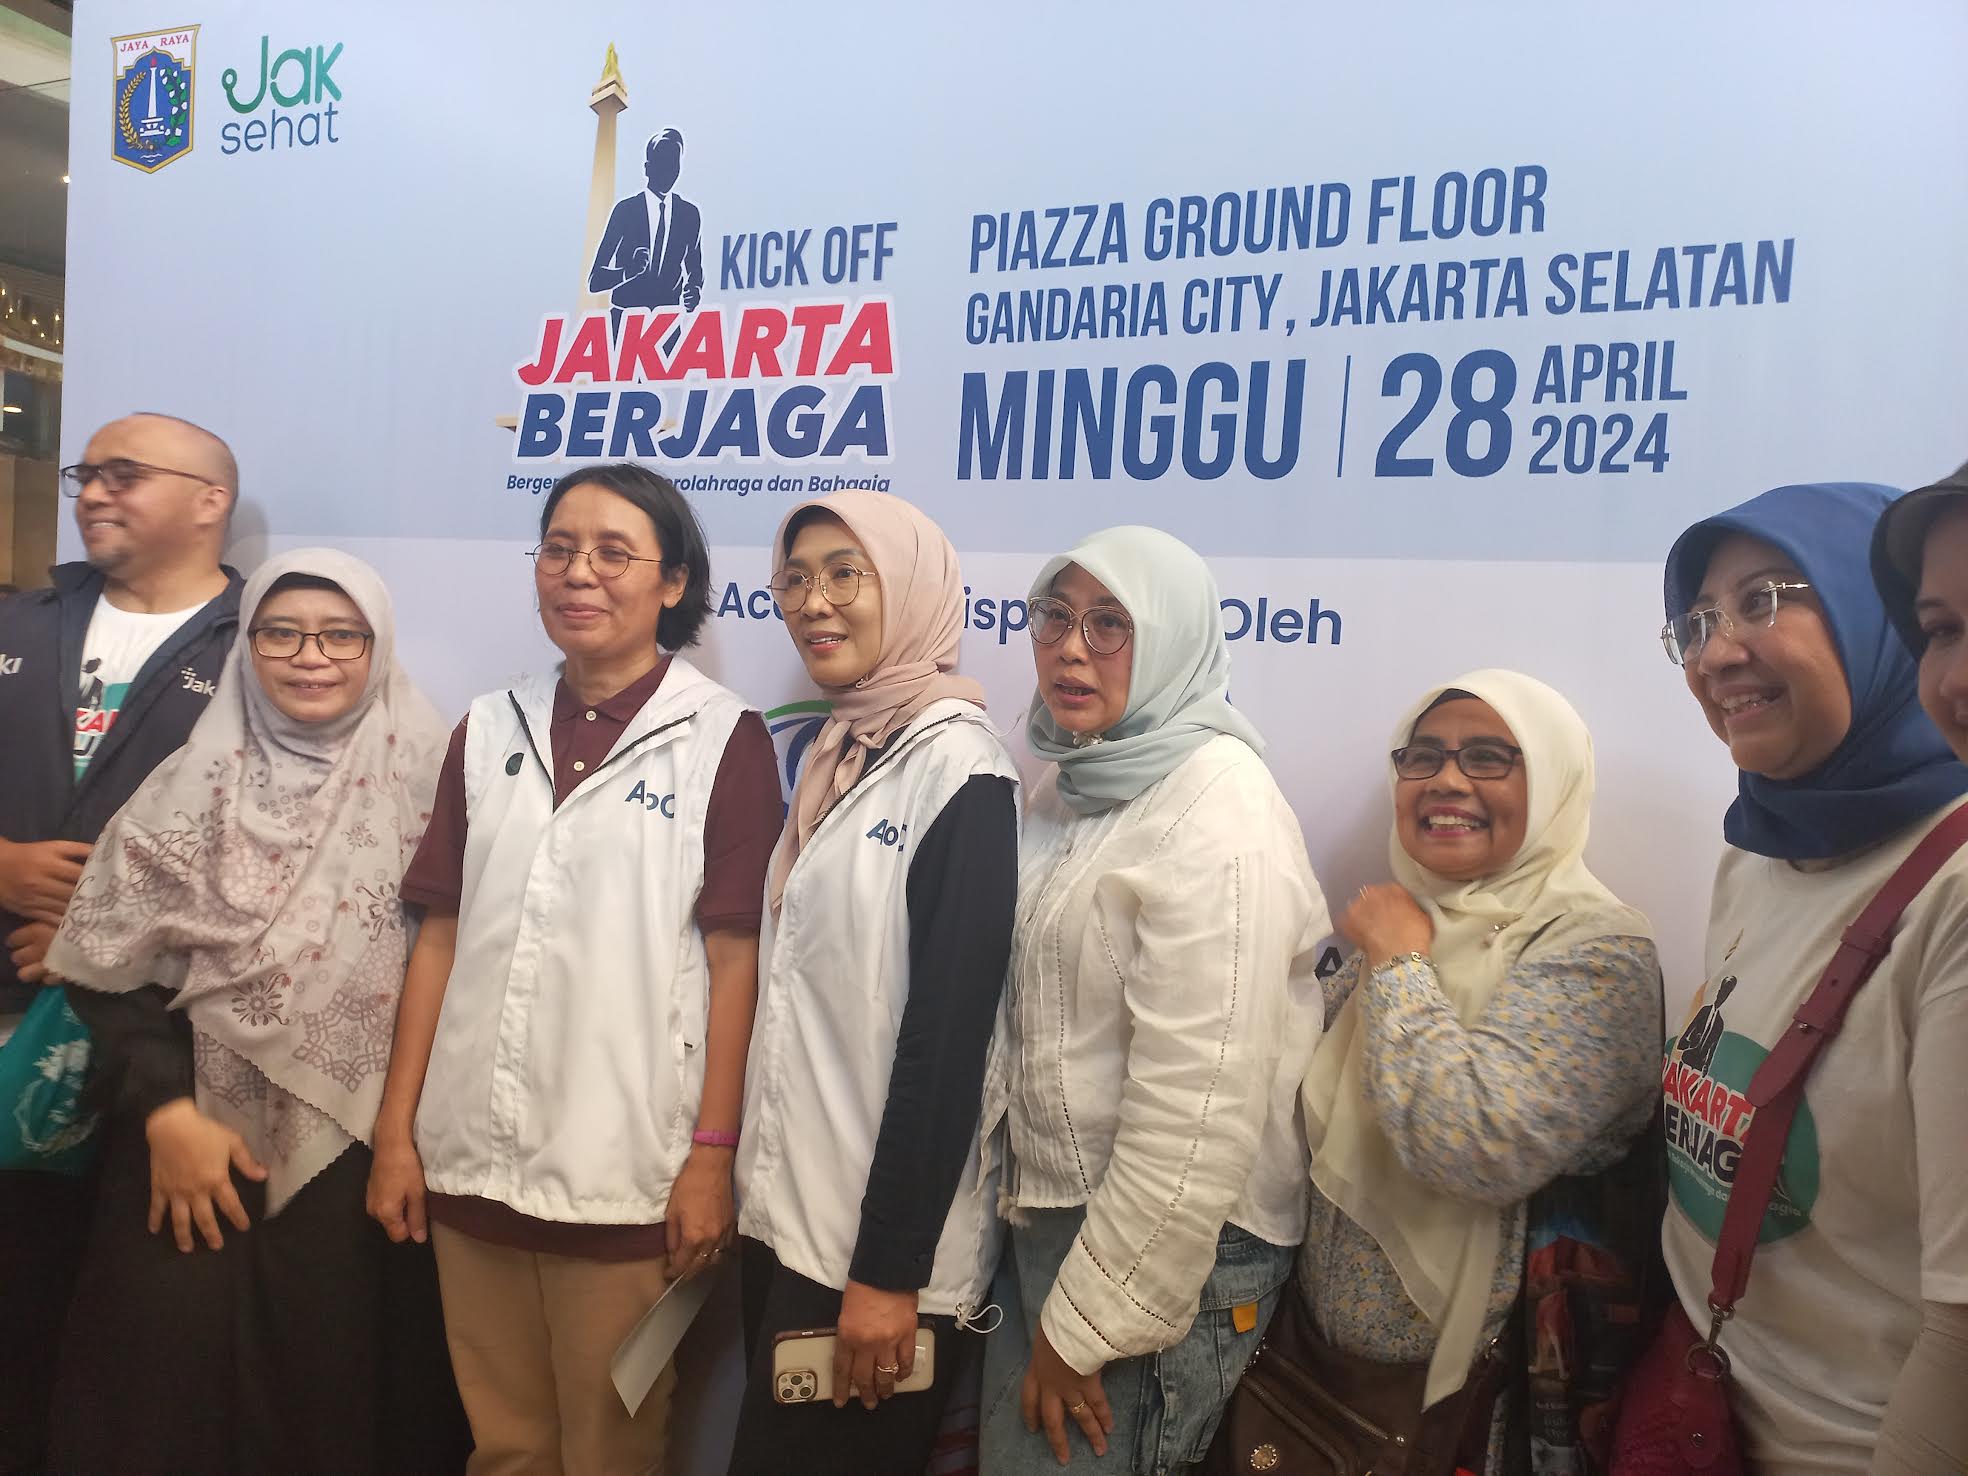 Kemenkes Sambut Baik Program 'Jakarta Berjaga' Prilaku Hidup Sehat